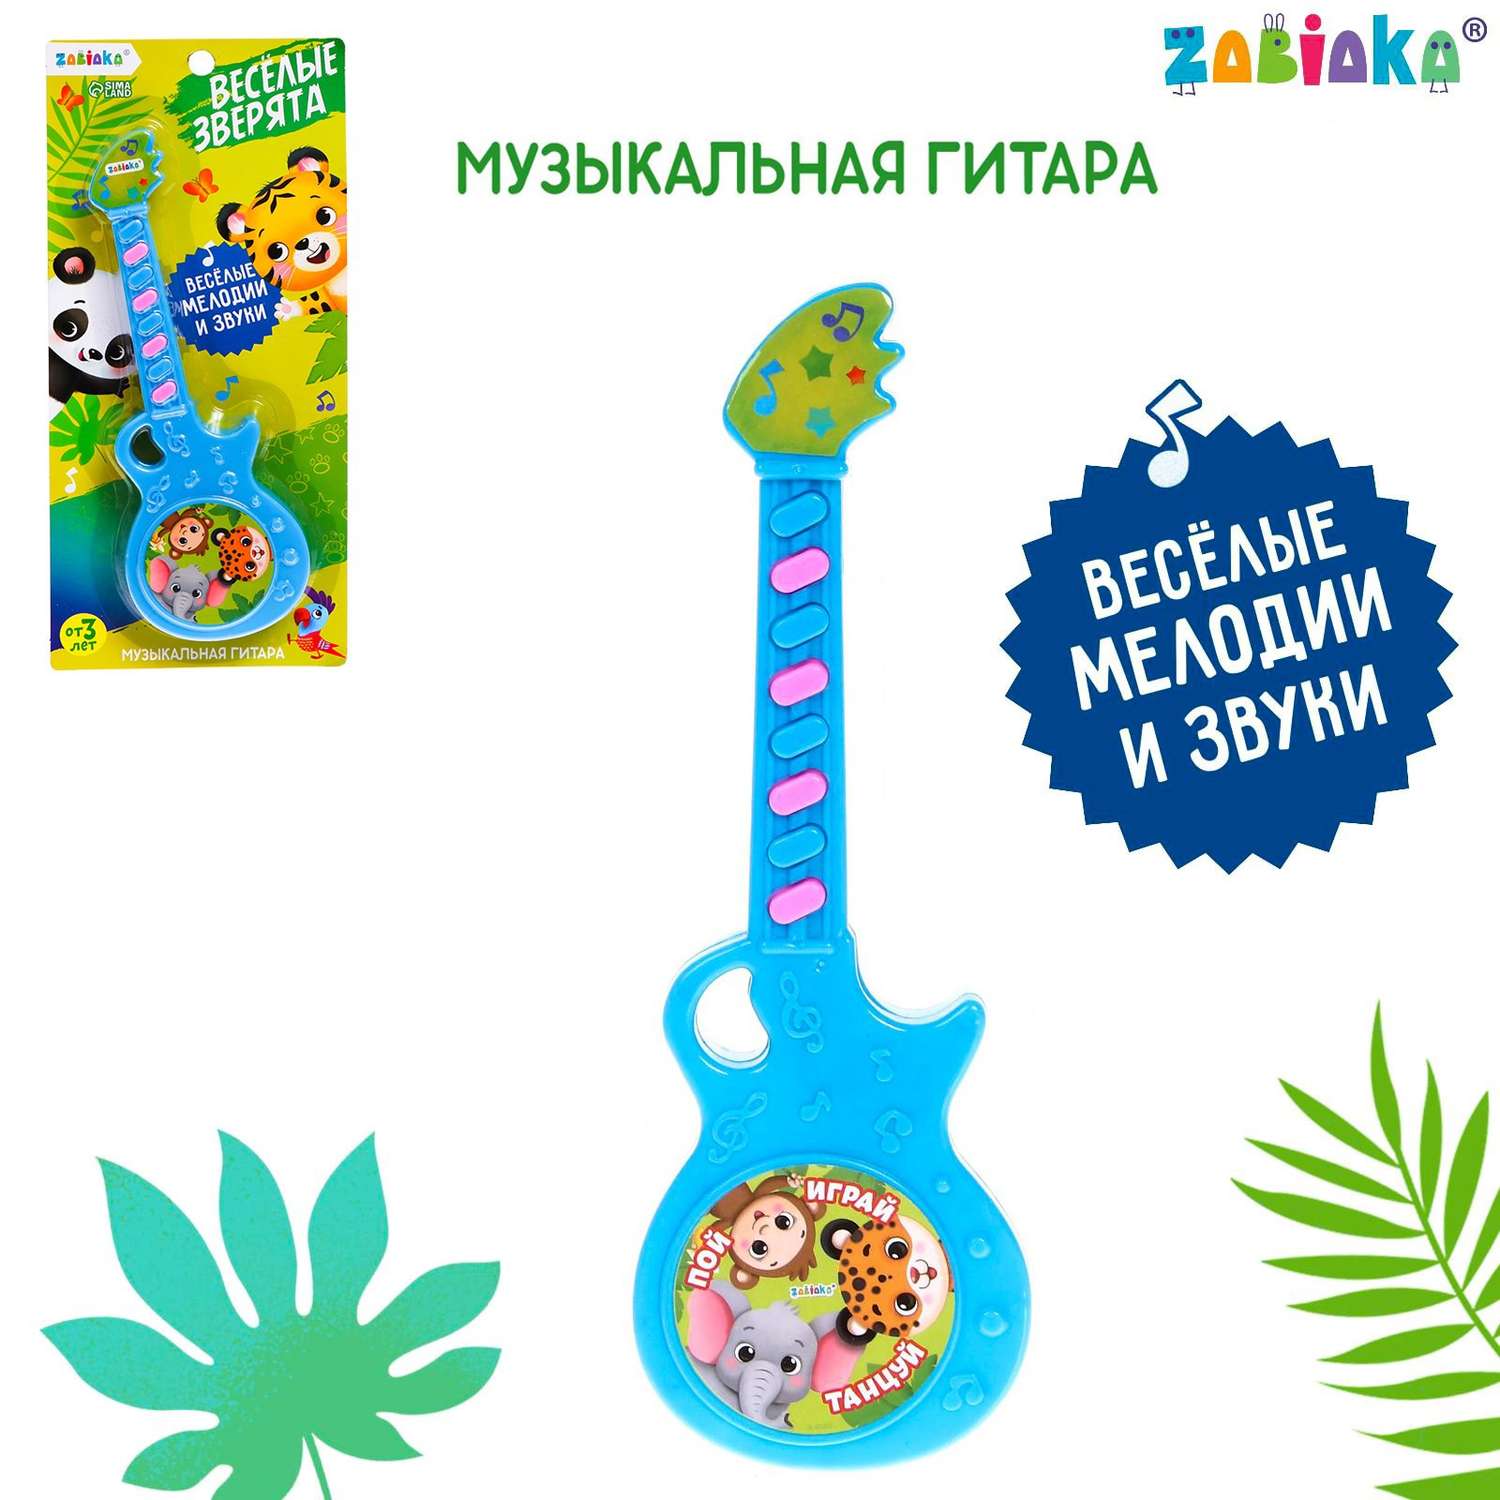 Музыкальная гитара Zabiaka «Весёлые зверята» игрушечная звук цвет голубой - фото 2